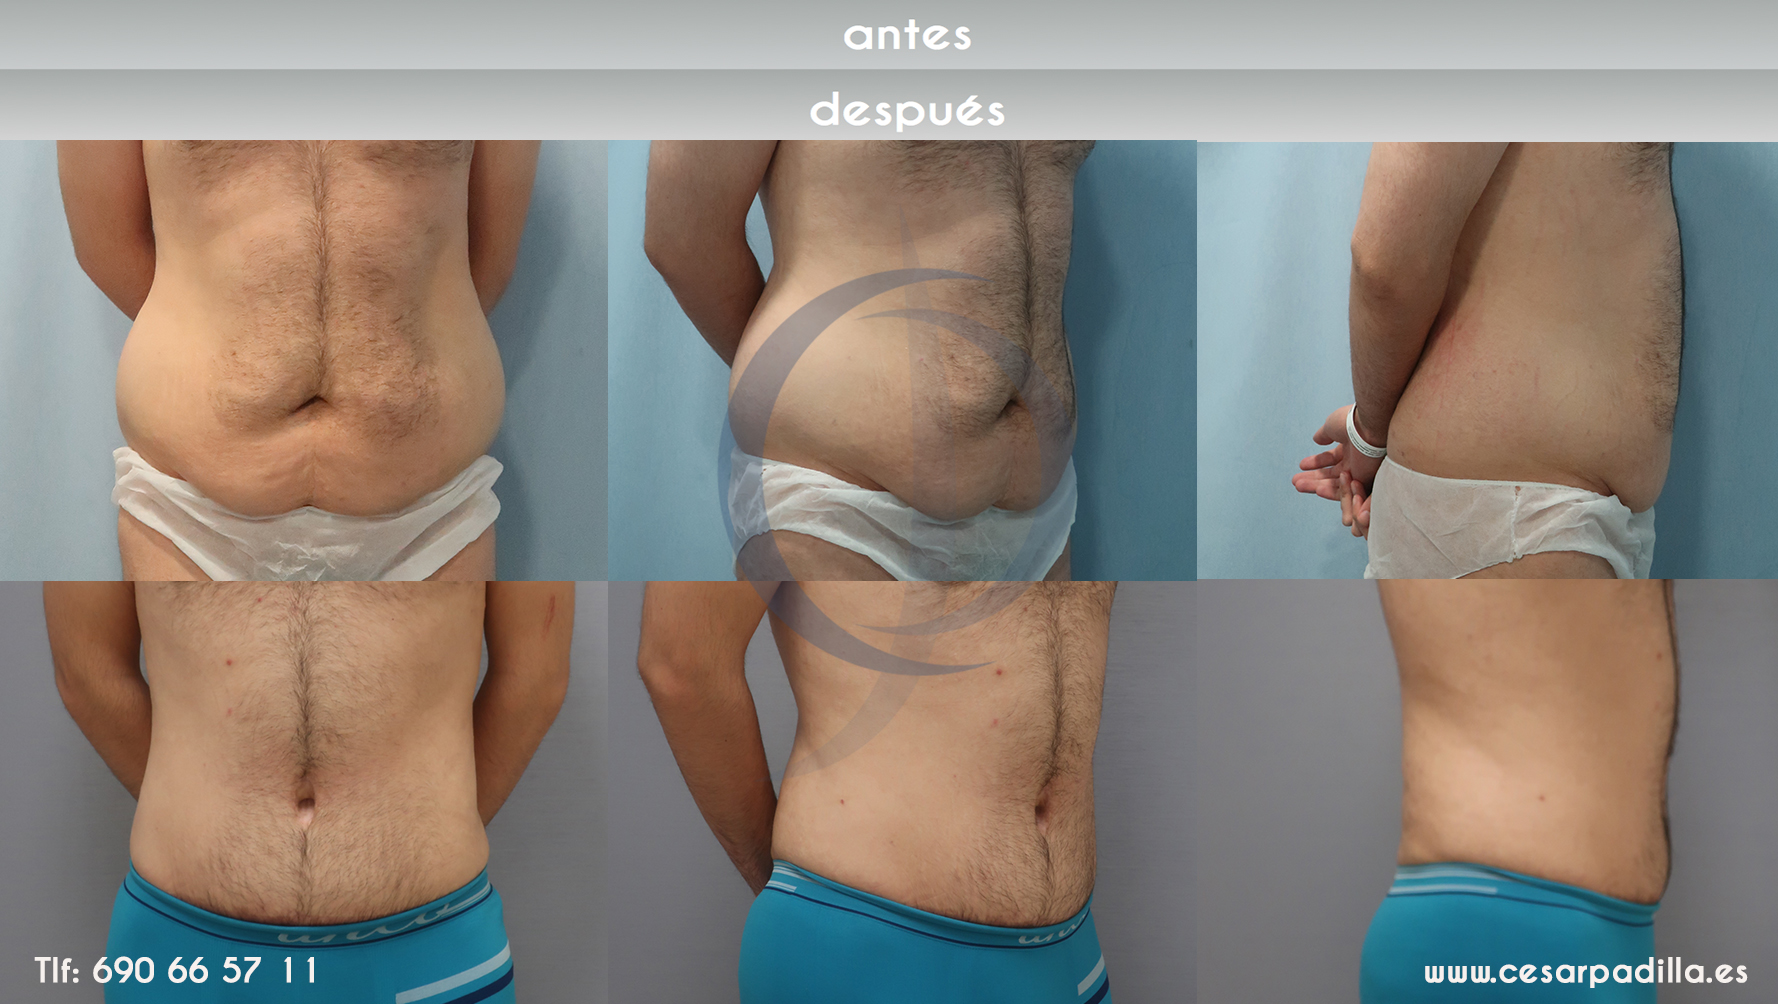 gráfica que muestra el antes y depués de la abdominoplastia en un hombre